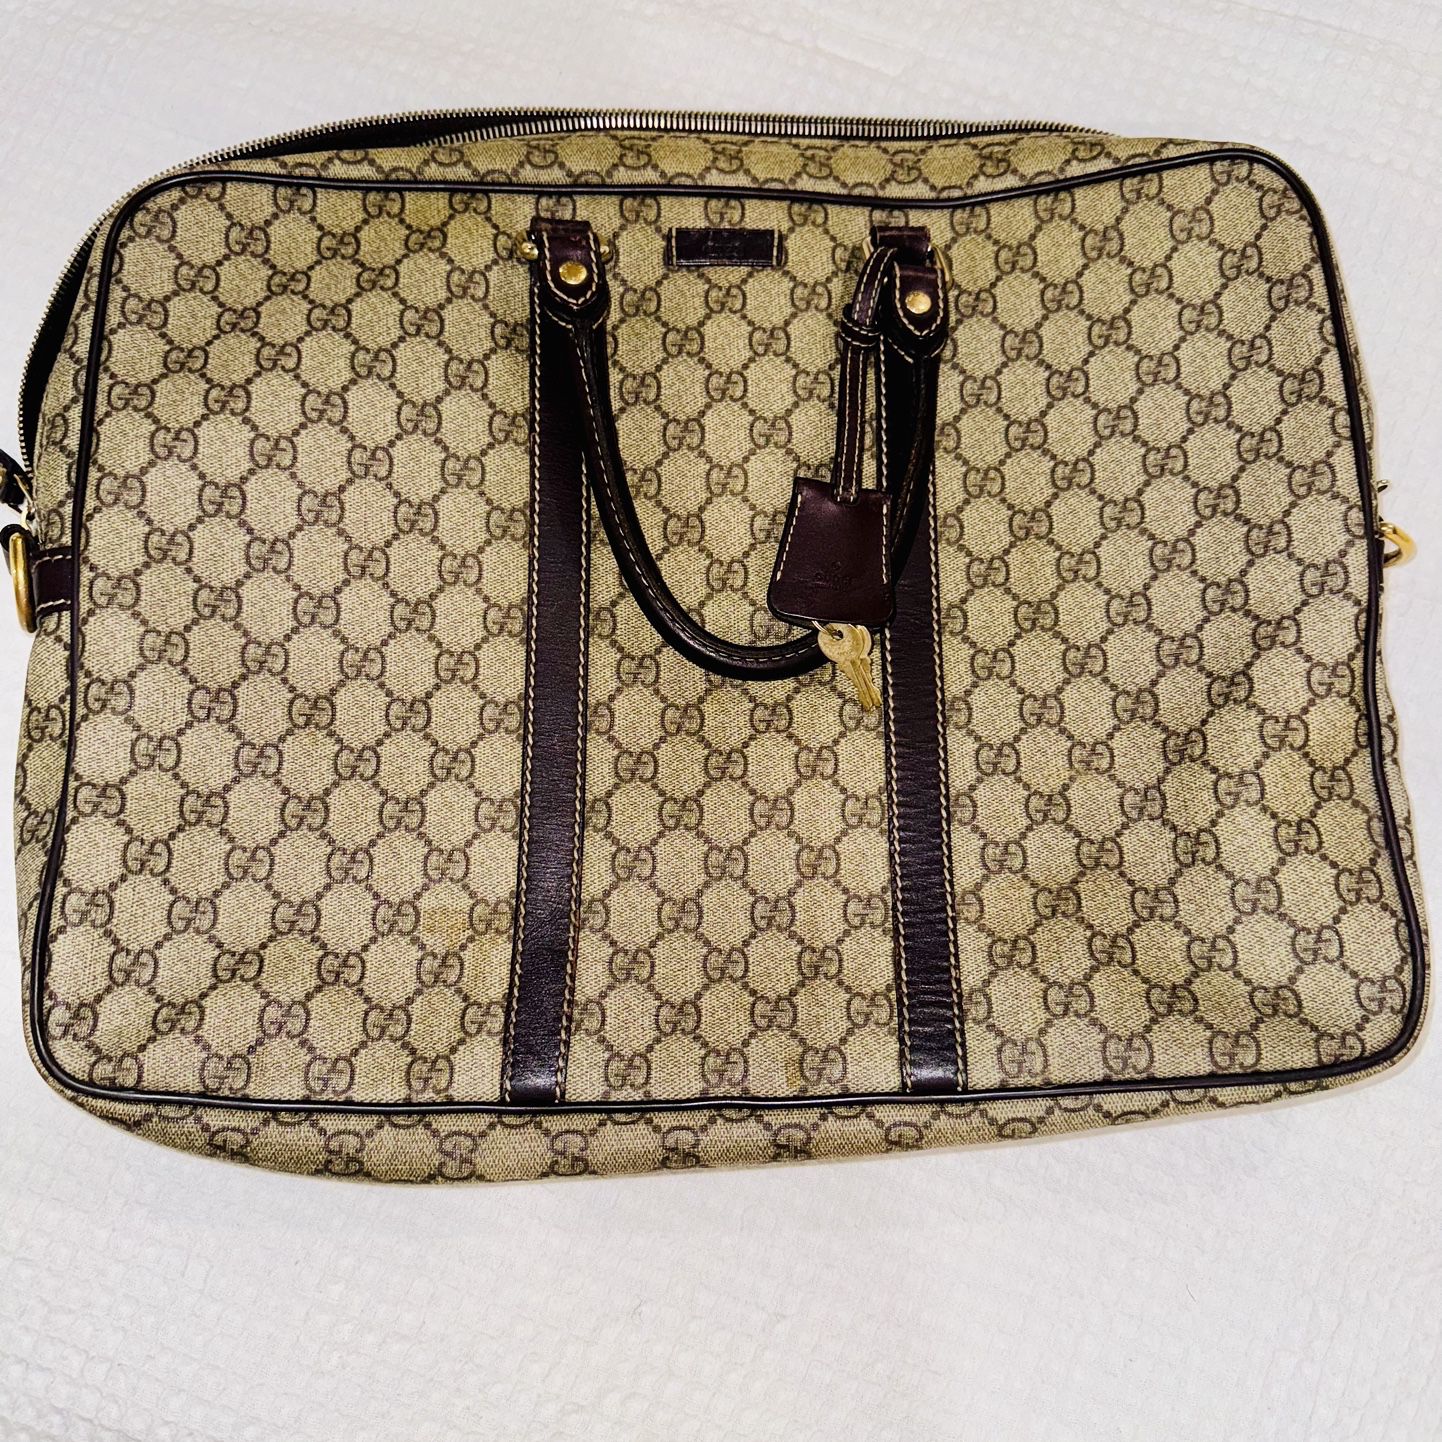  $550 OBO…Gucci Men's Black GG Supreme Canvas Briefcase